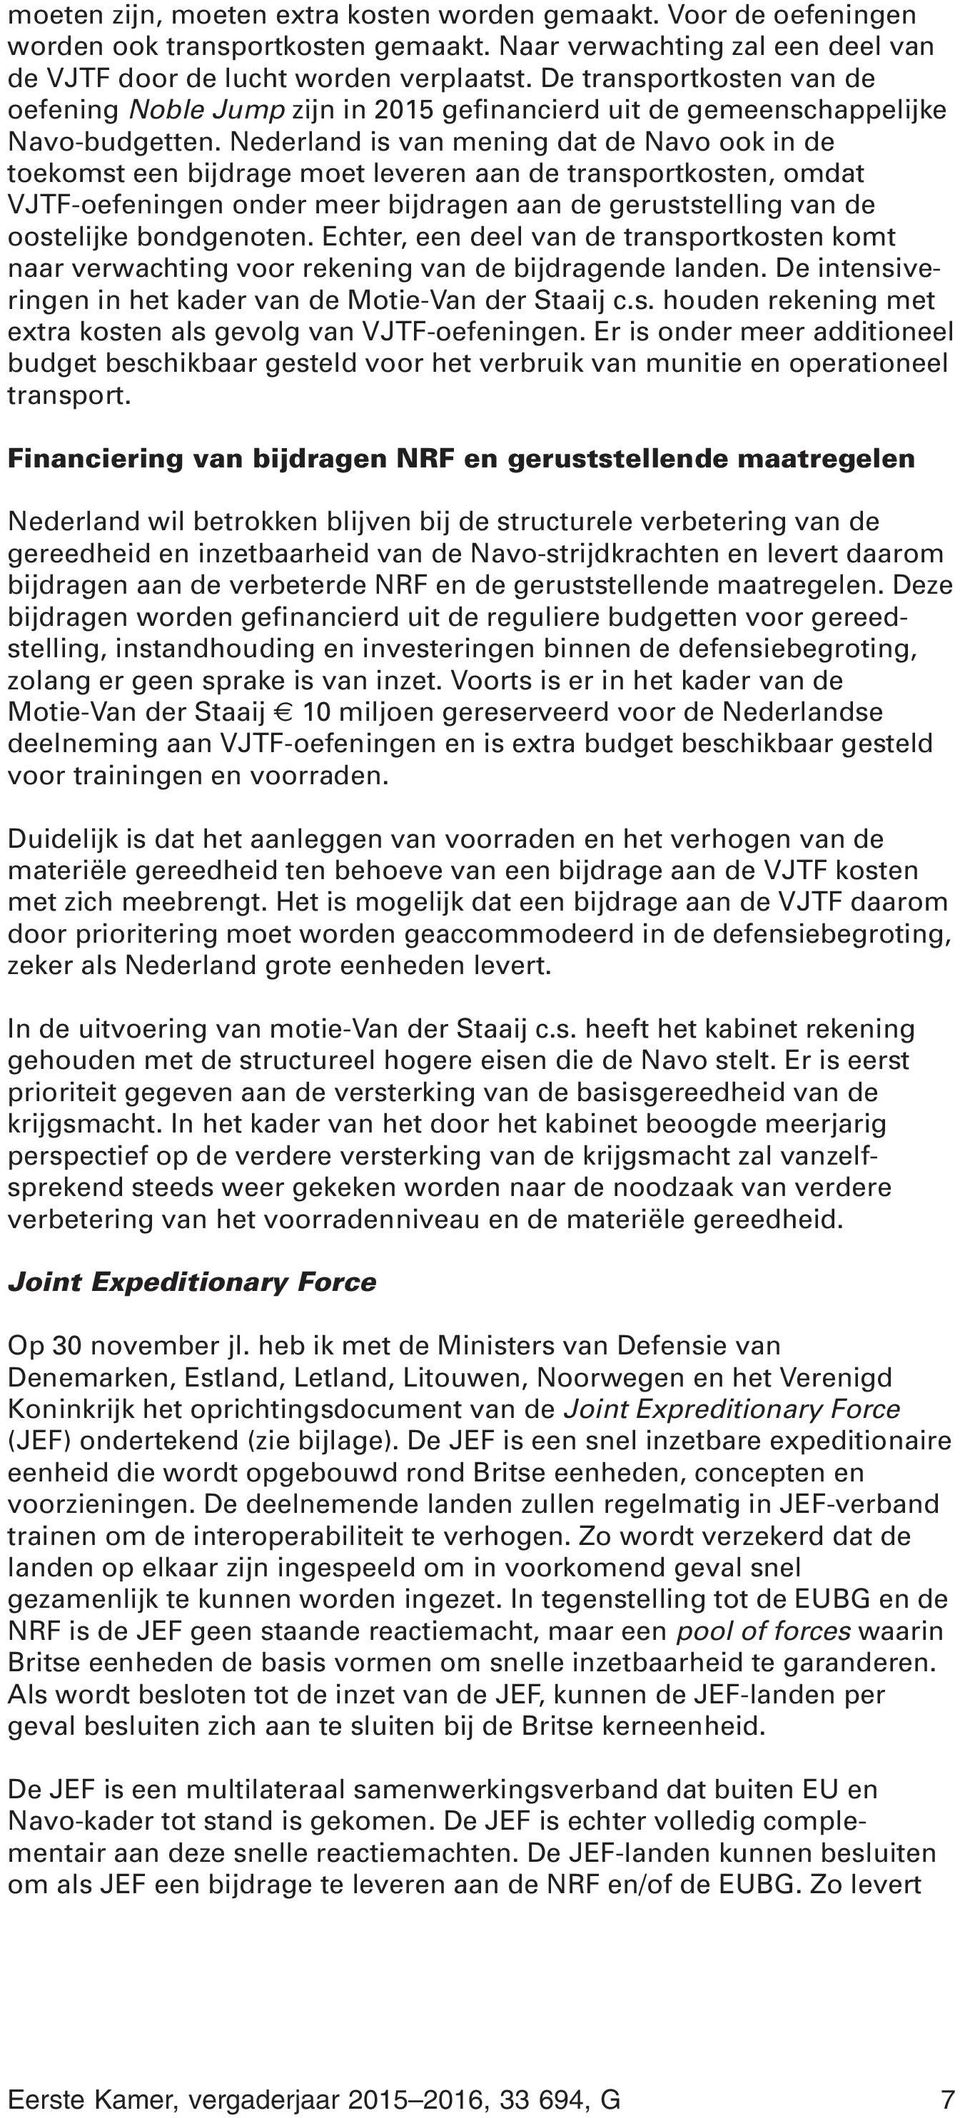 Nederland is van mening dat de Navo ook in de toekomst een bijdrage moet leveren aan de transportkosten, omdat VJTF-oefeningen onder meer bijdragen aan de geruststelling van de oostelijke bondgenoten.